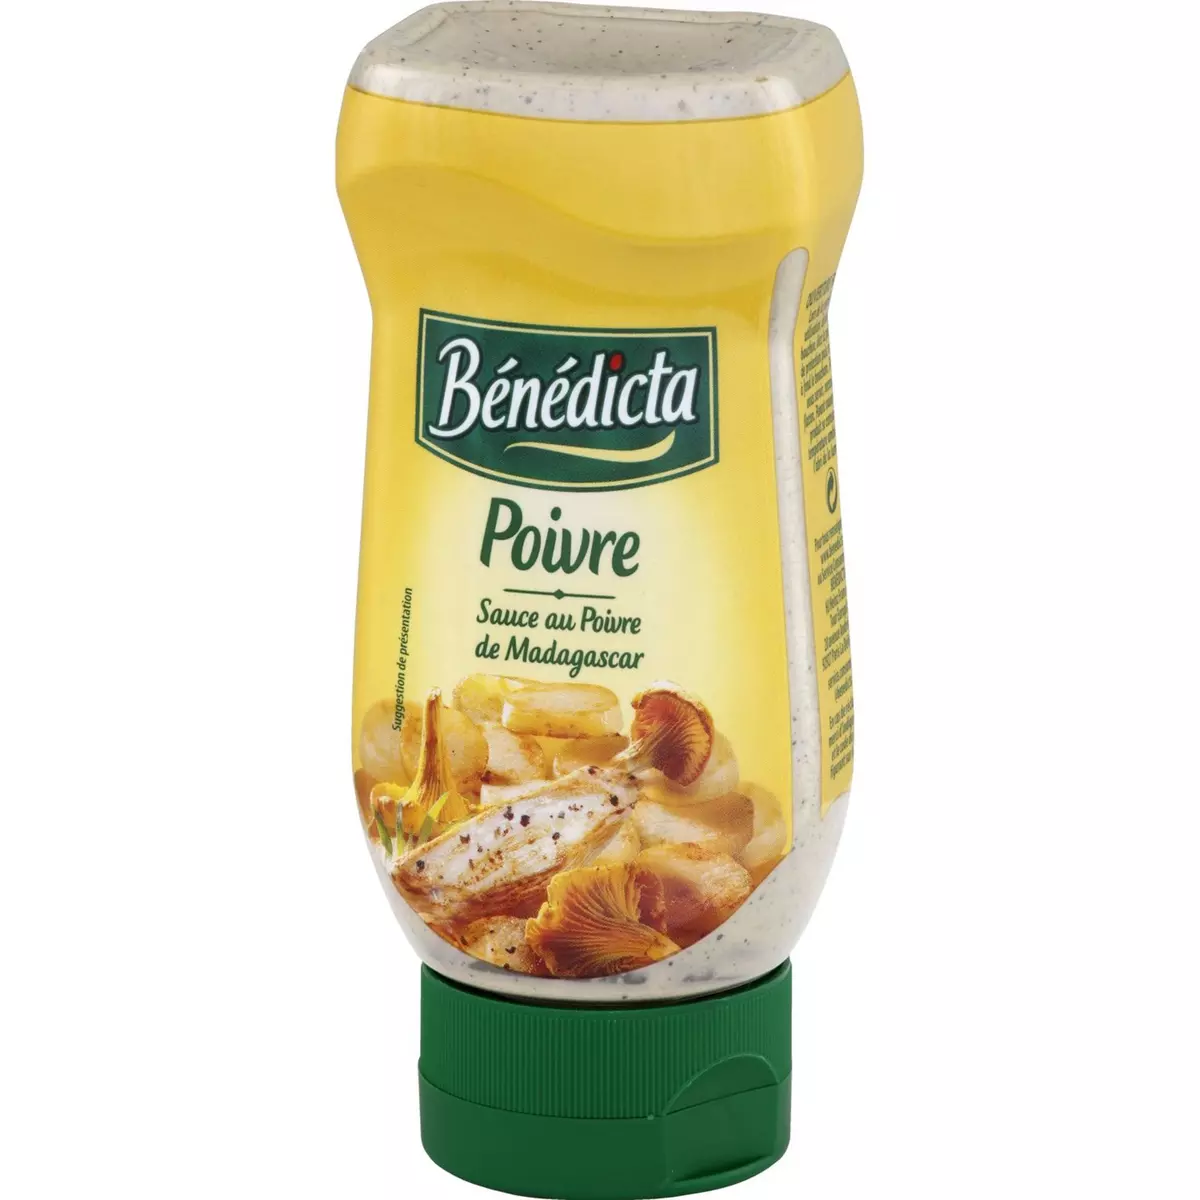 BENEDICTA Sauce au poivre de Madagascar flacon souple 235g